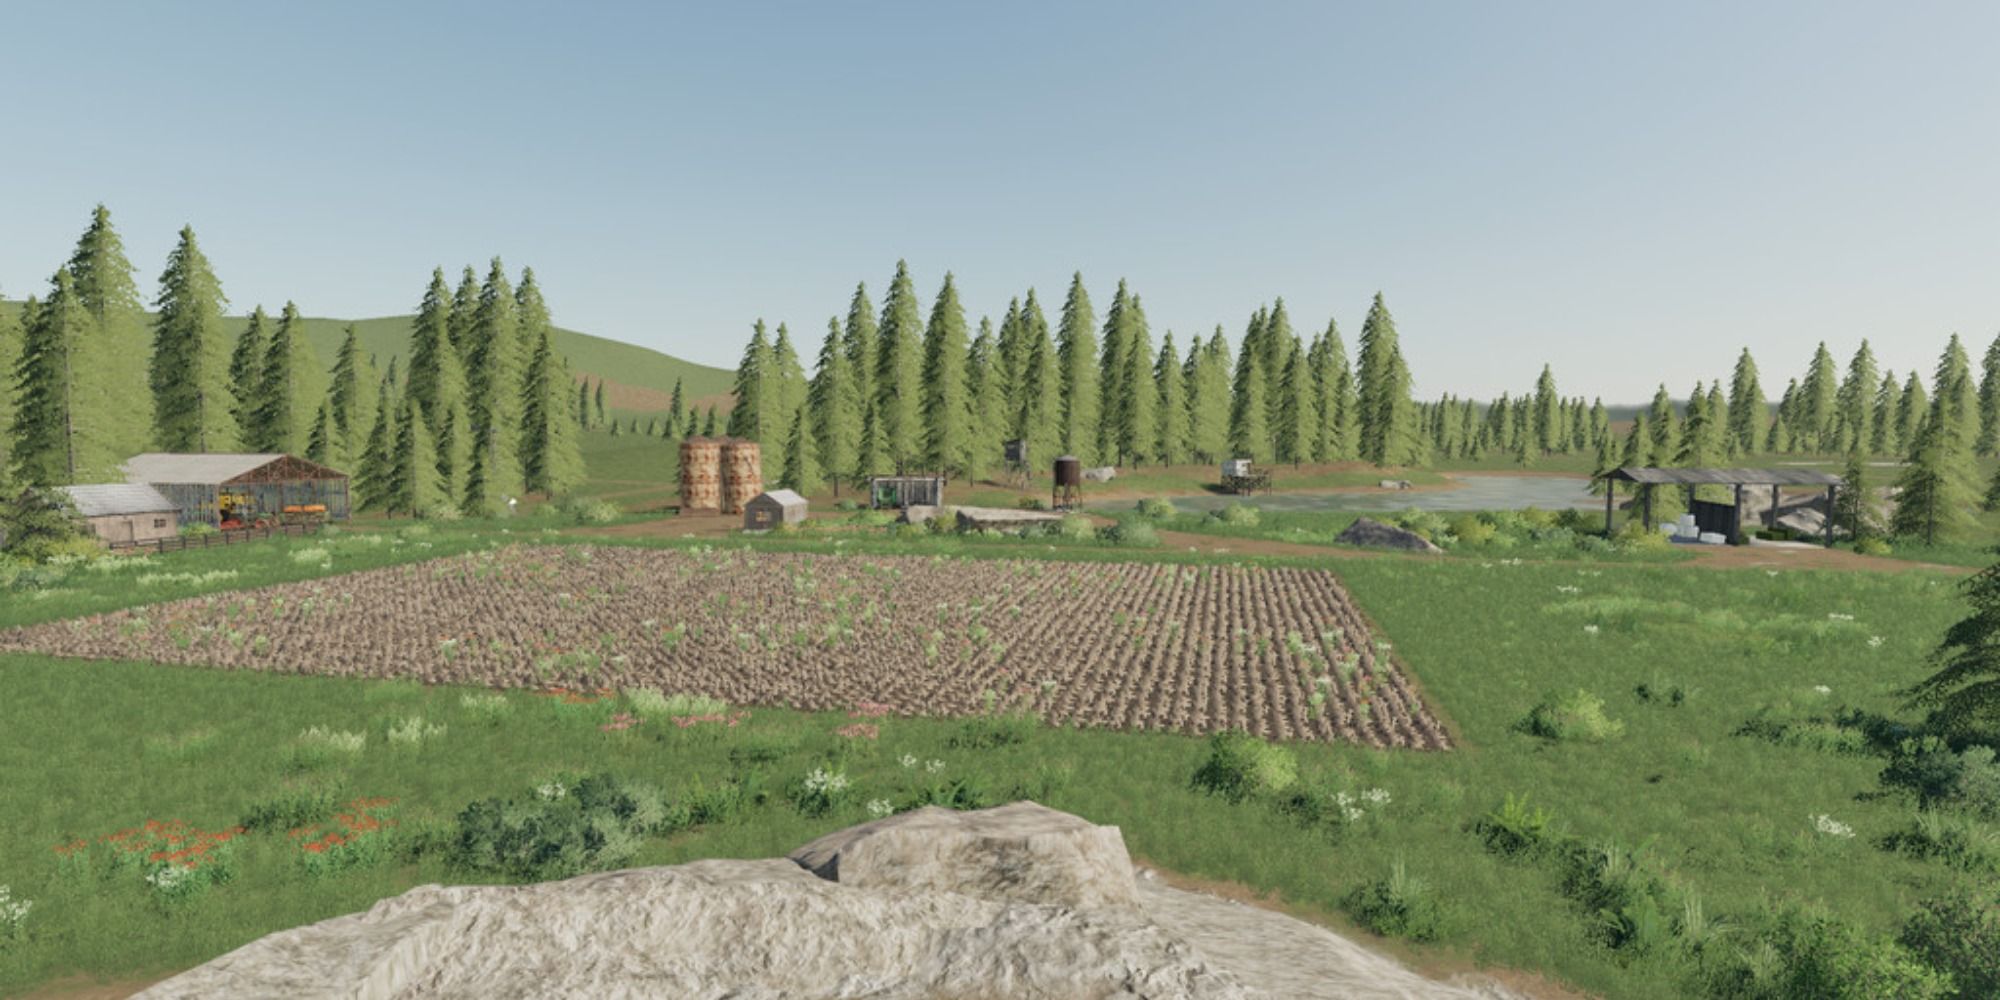 buy land farming simulator 19